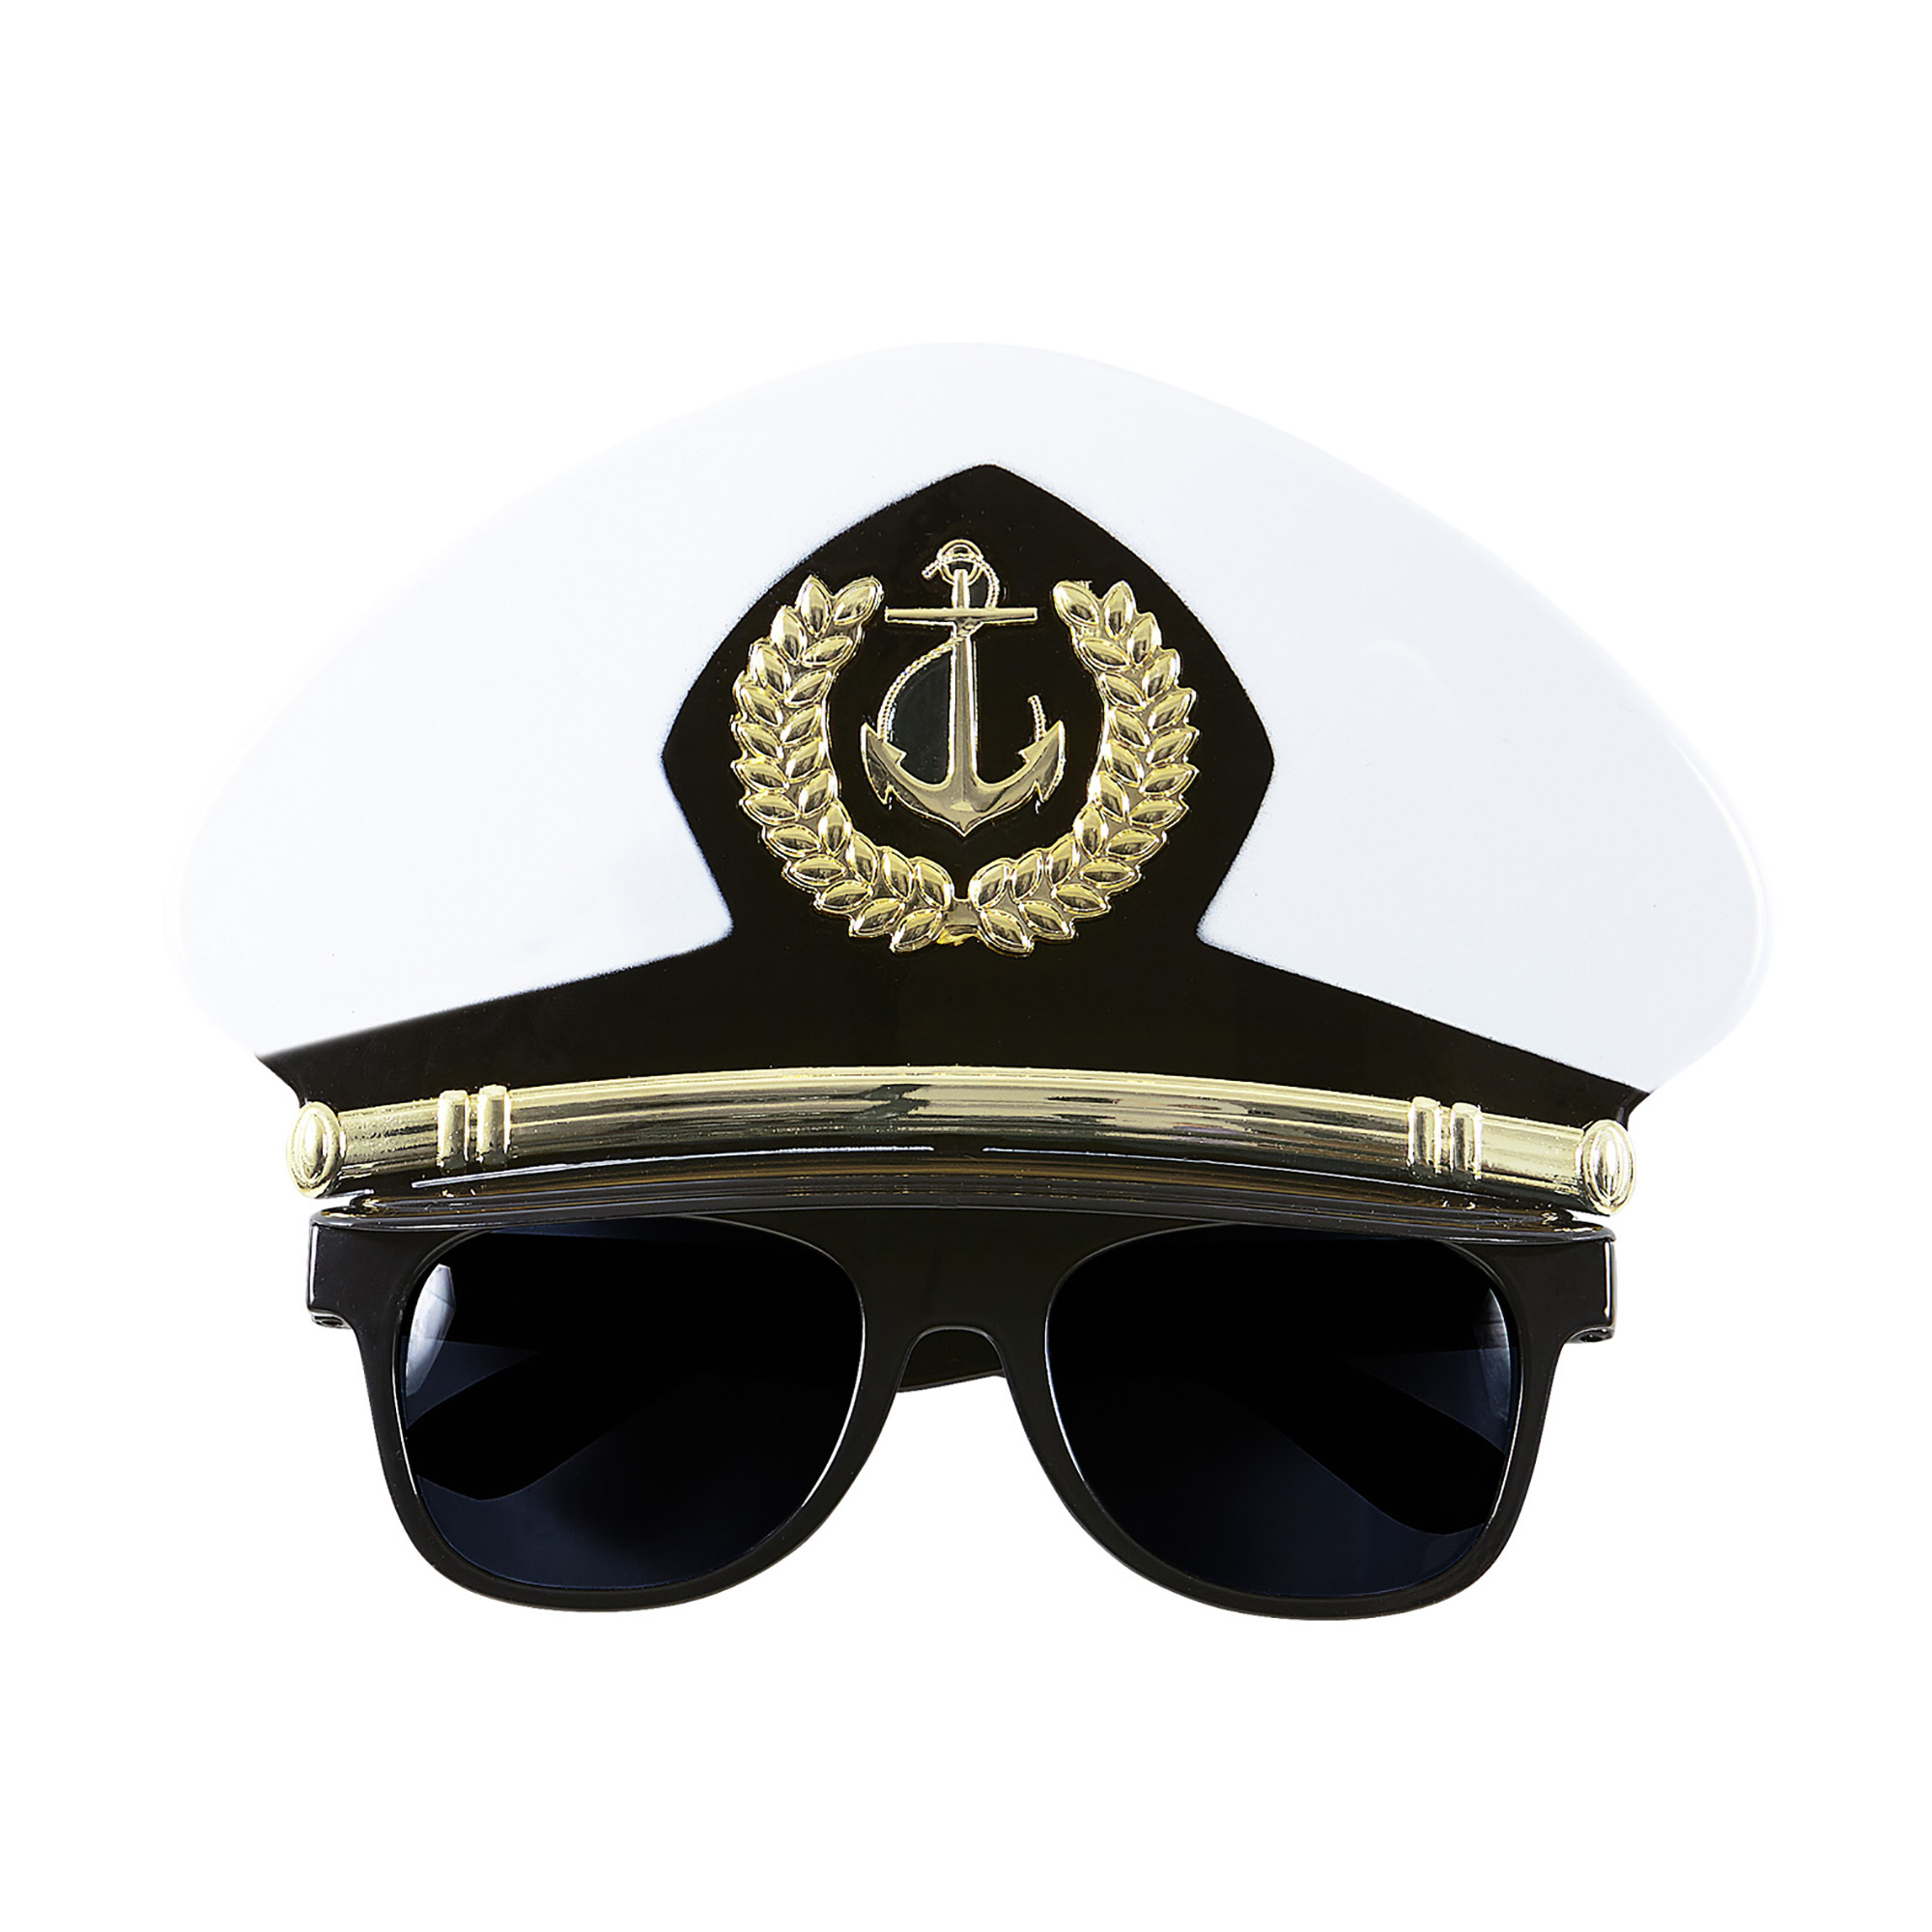 kapiteins bril met kapteinspet